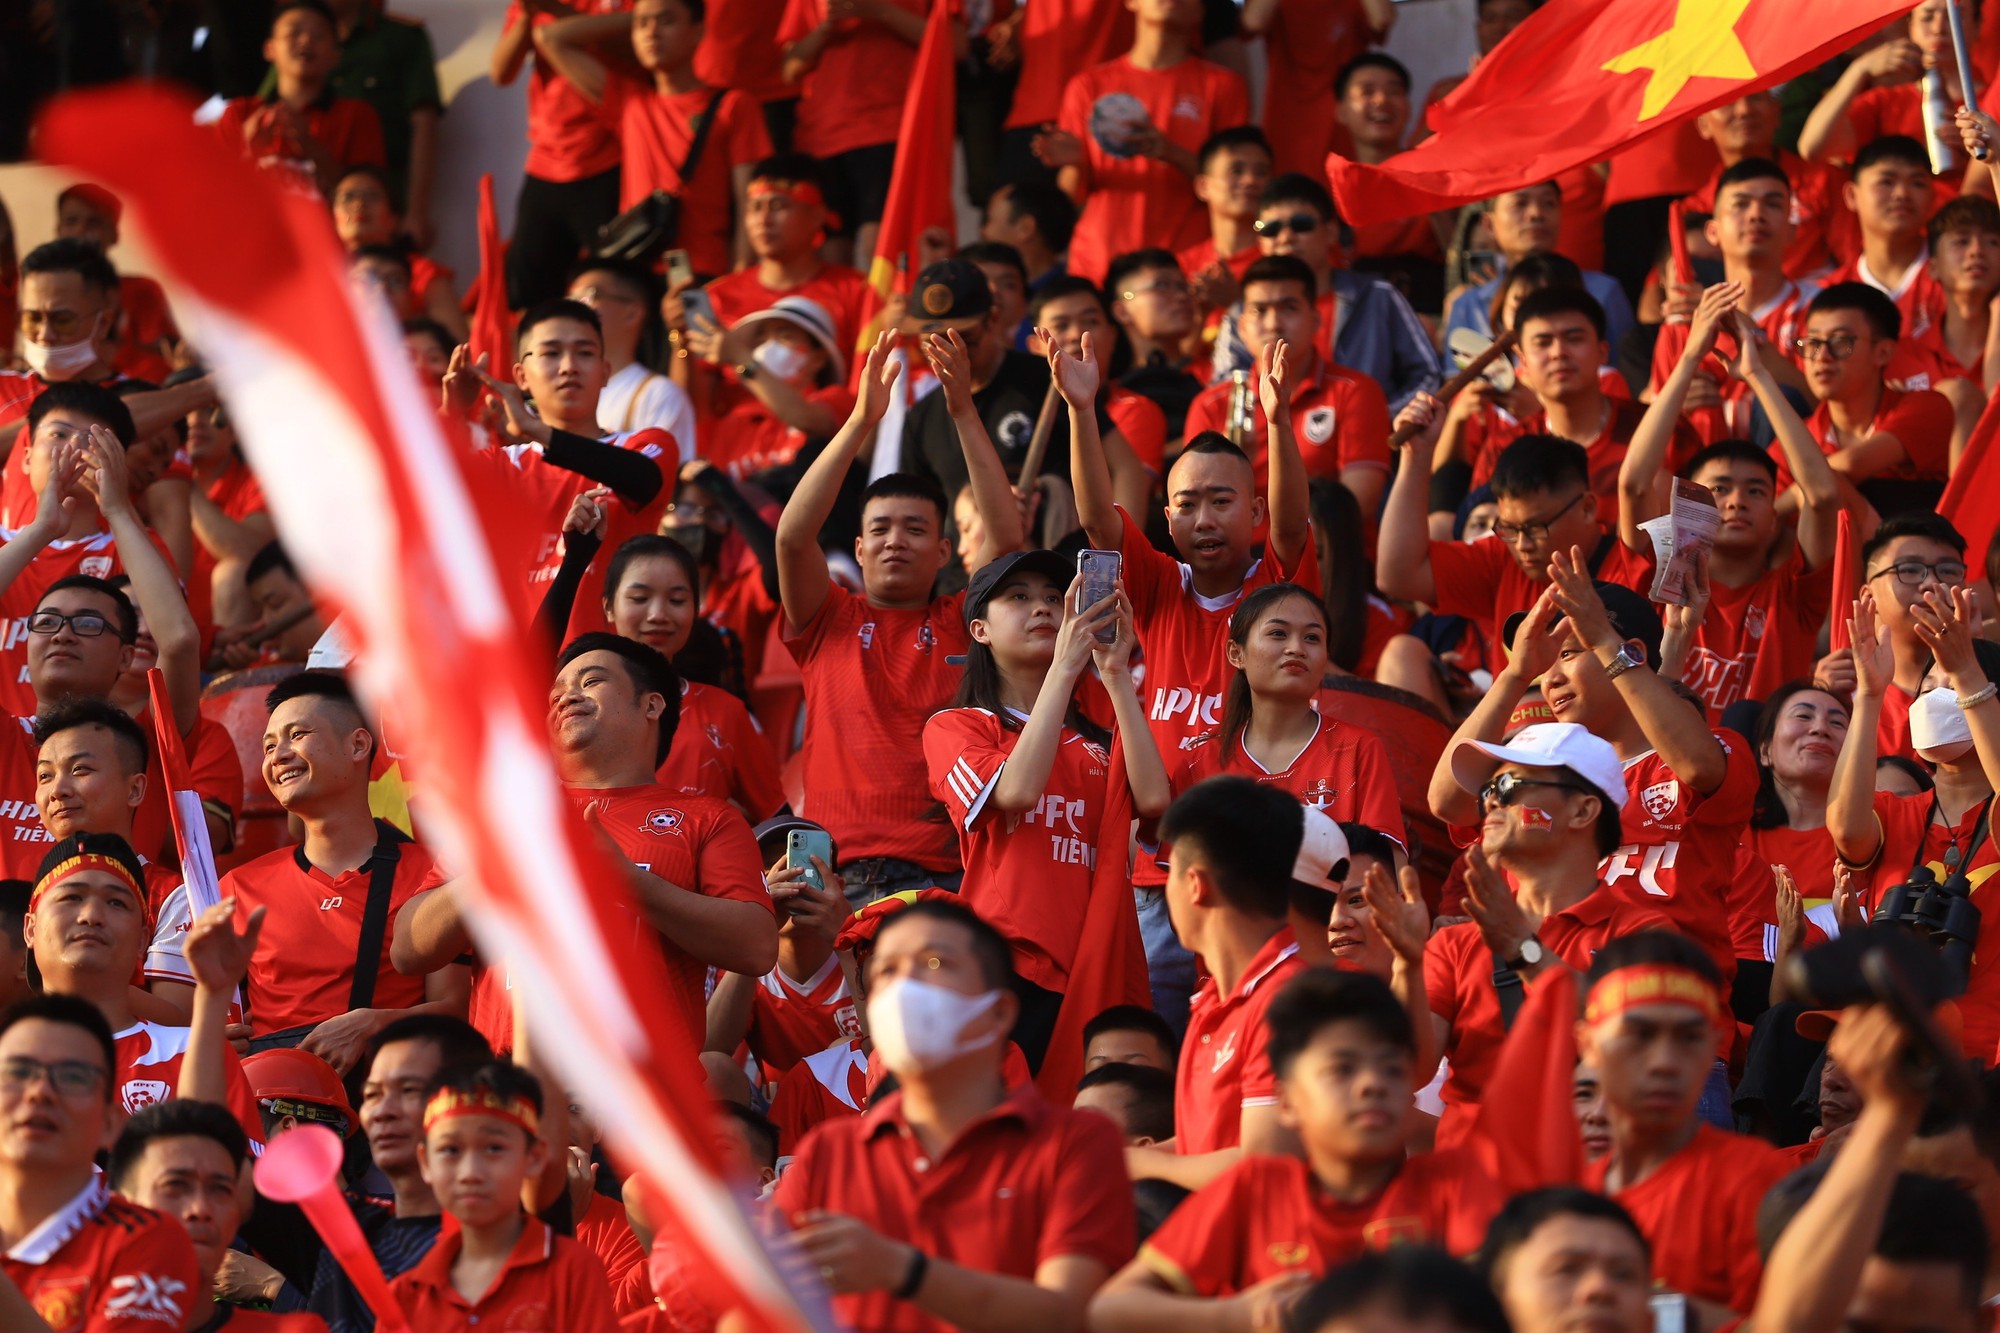 Đội tuyển Việt Nam đấu đội Hồng Kông: Quang Hải đá chính, Công Phượng và Văn Toàn vắng mặt - Ảnh 5.